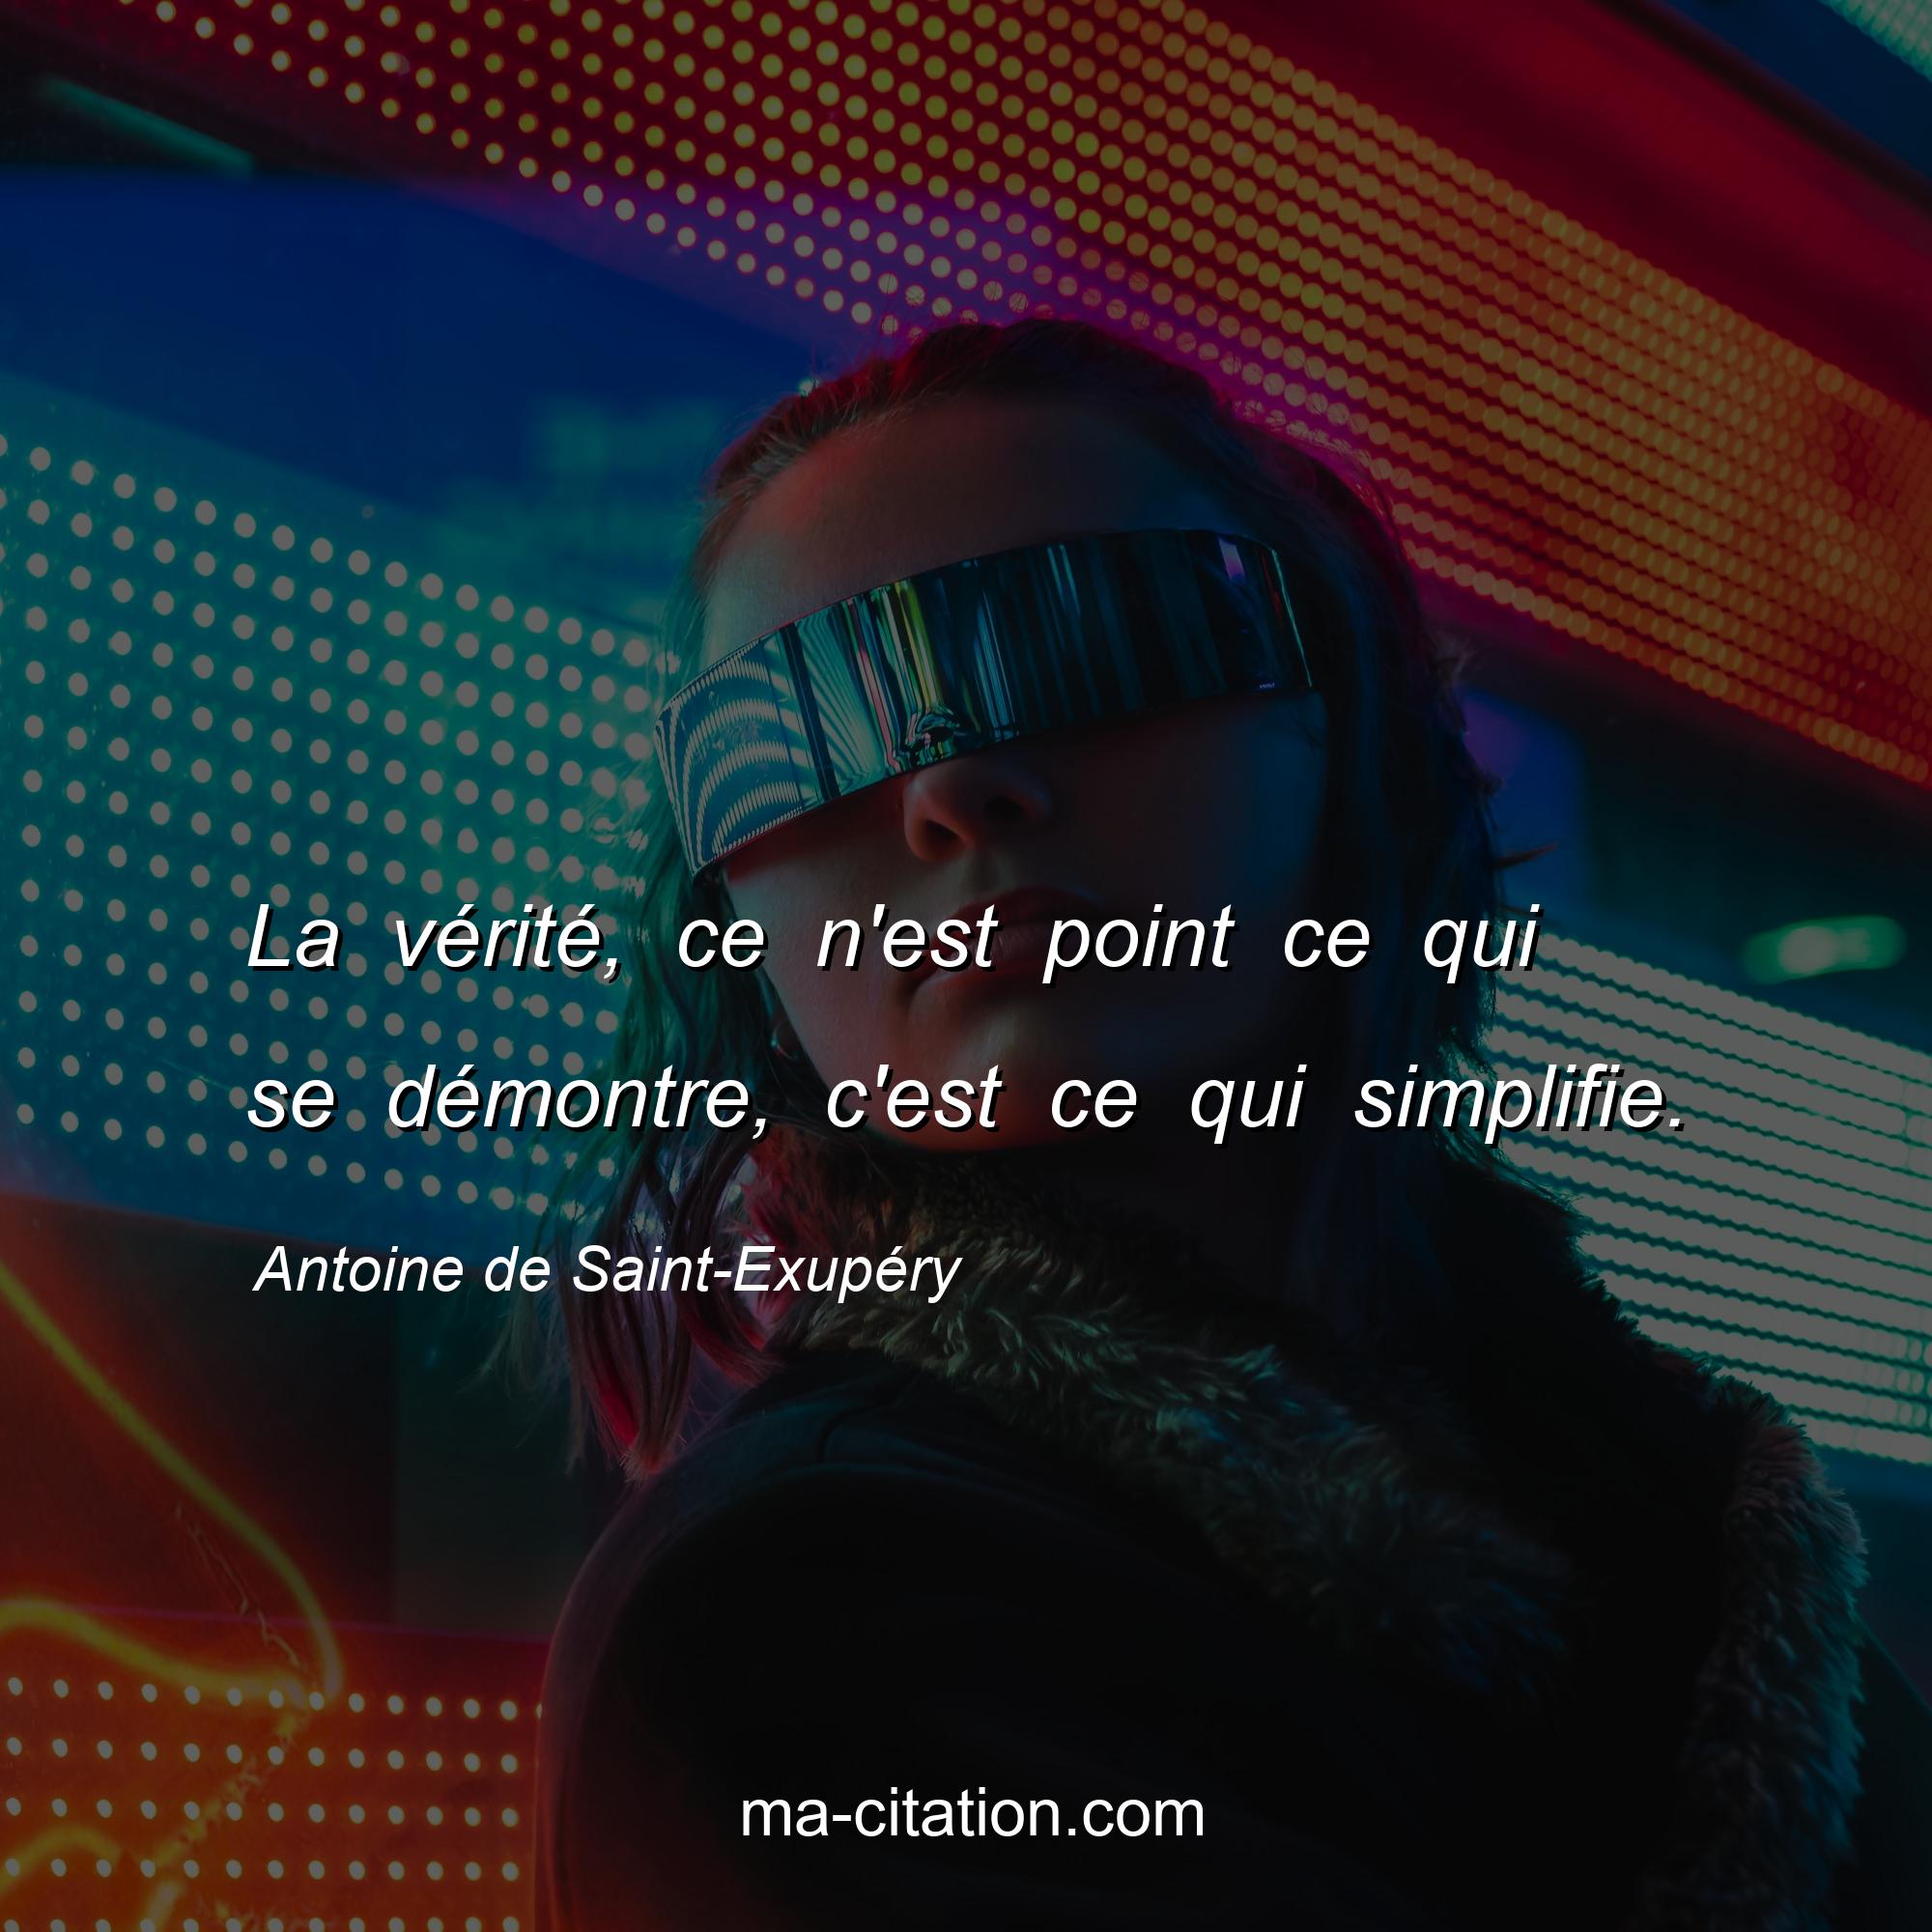 Antoine de Saint-Exupéry : La vérité, ce n'est point ce qui se démontre, c'est ce qui simplifie.